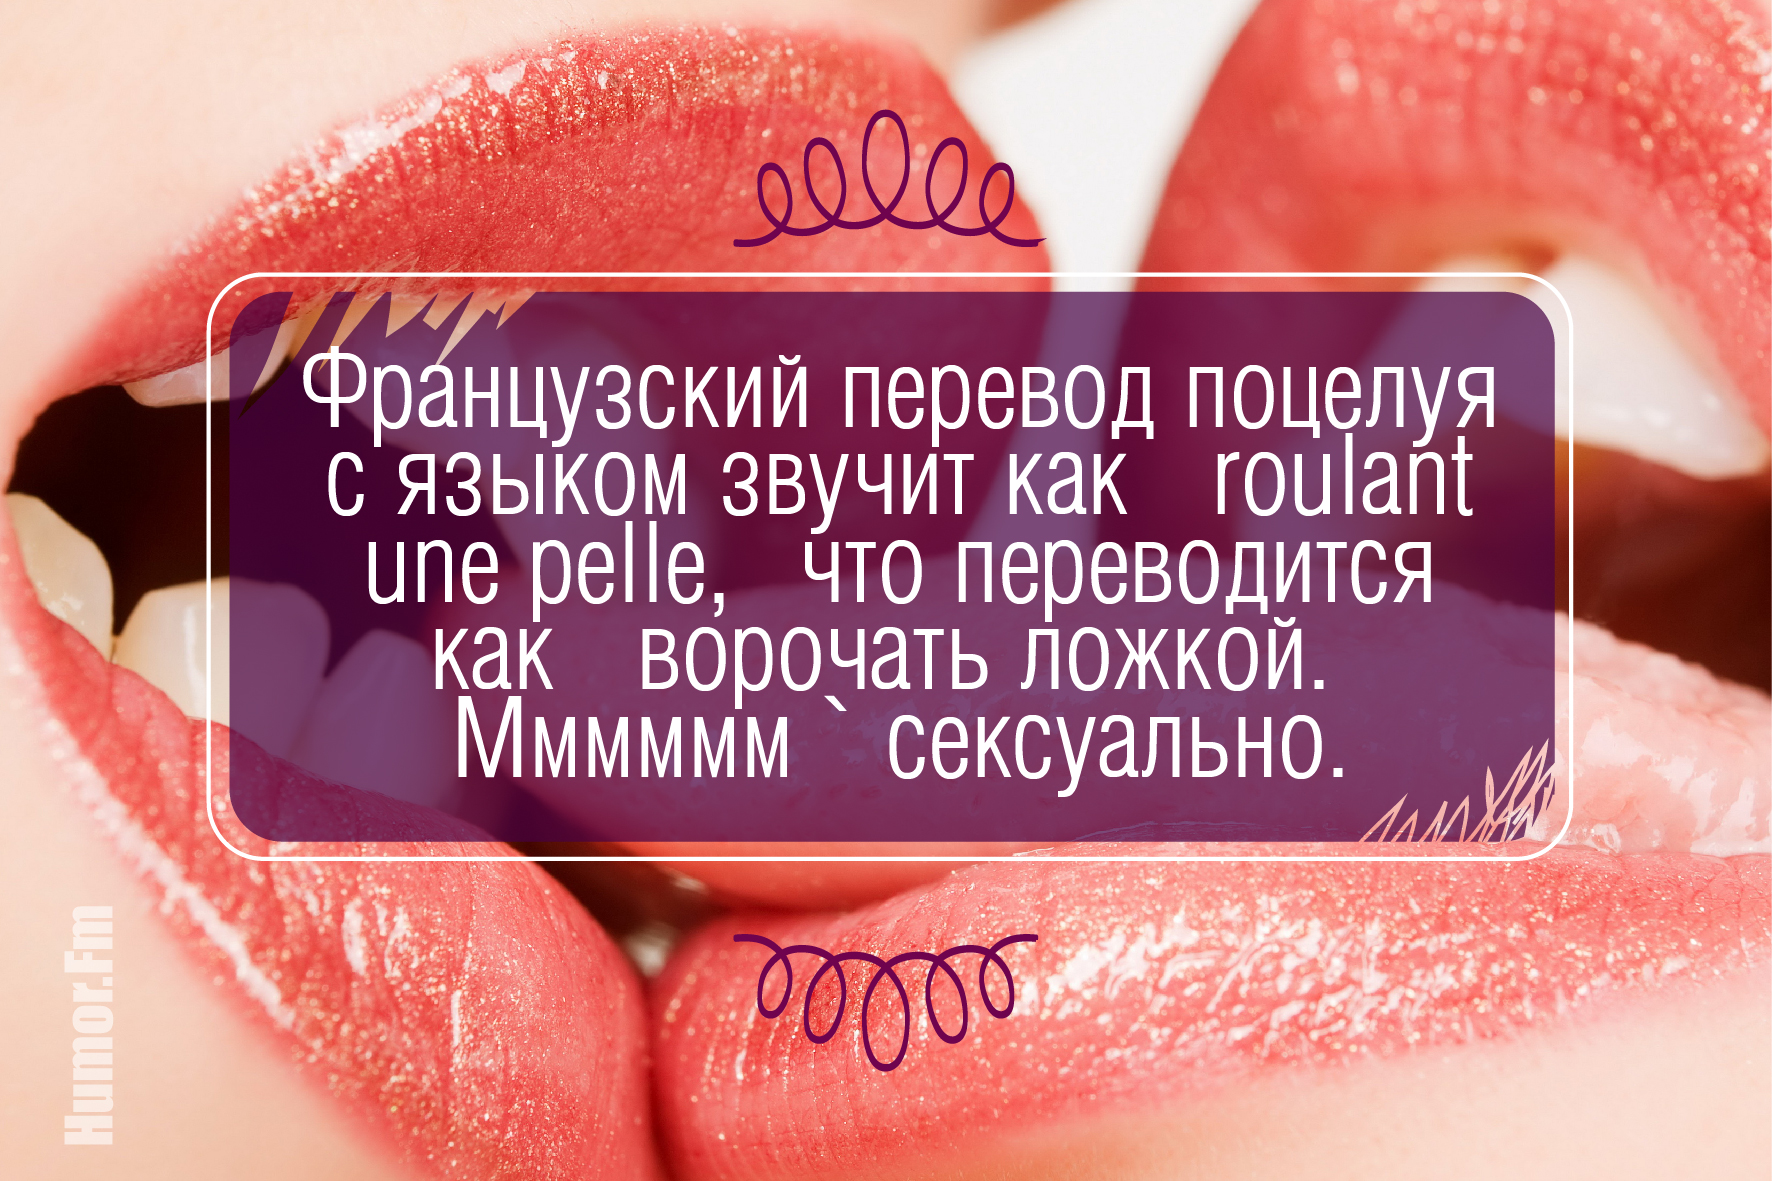 Красивые фразы про губы. Факты о поцелуях в губы. Поцелуй на здоровье. Молодой и красивый перевод